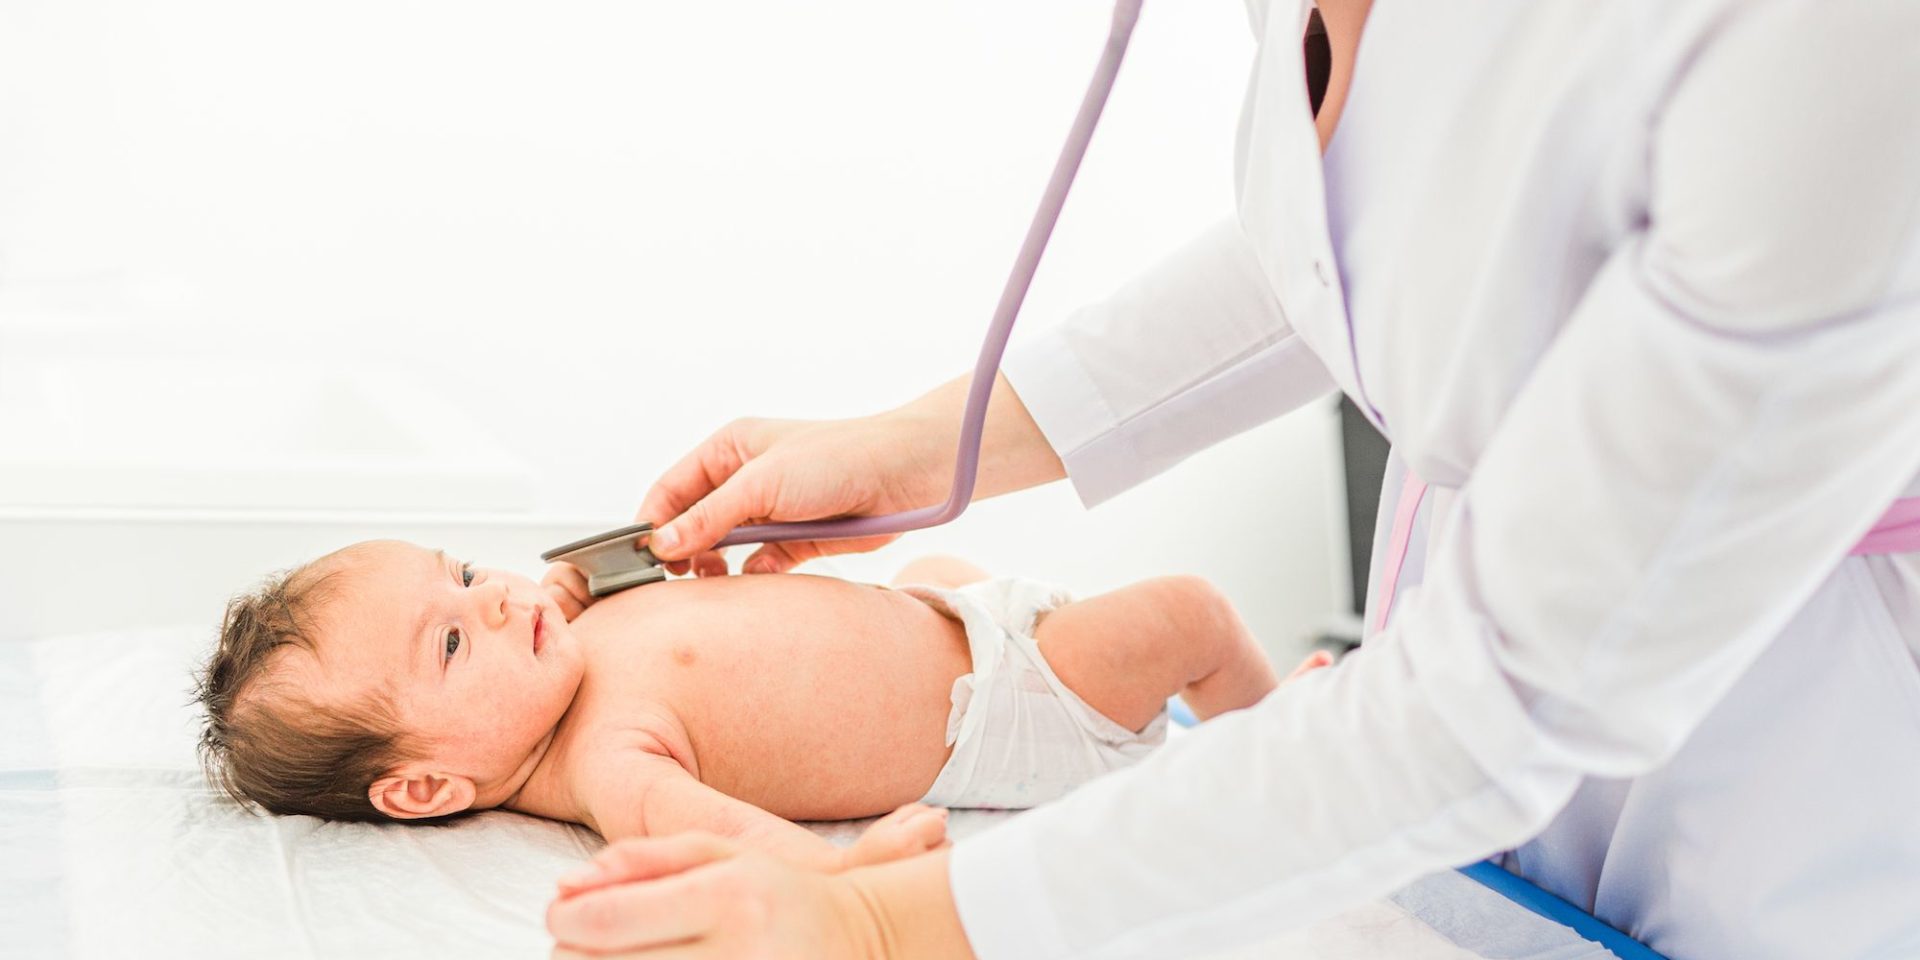 Pedijatrija je oblast medicine koja se bavi lečenjem dece od rođenja pa sve do njihovog punoletstva. Pedijatrijski pregledi se obavljaju u Euromedik zdravstvenim ustanovama na četiri lokacije.